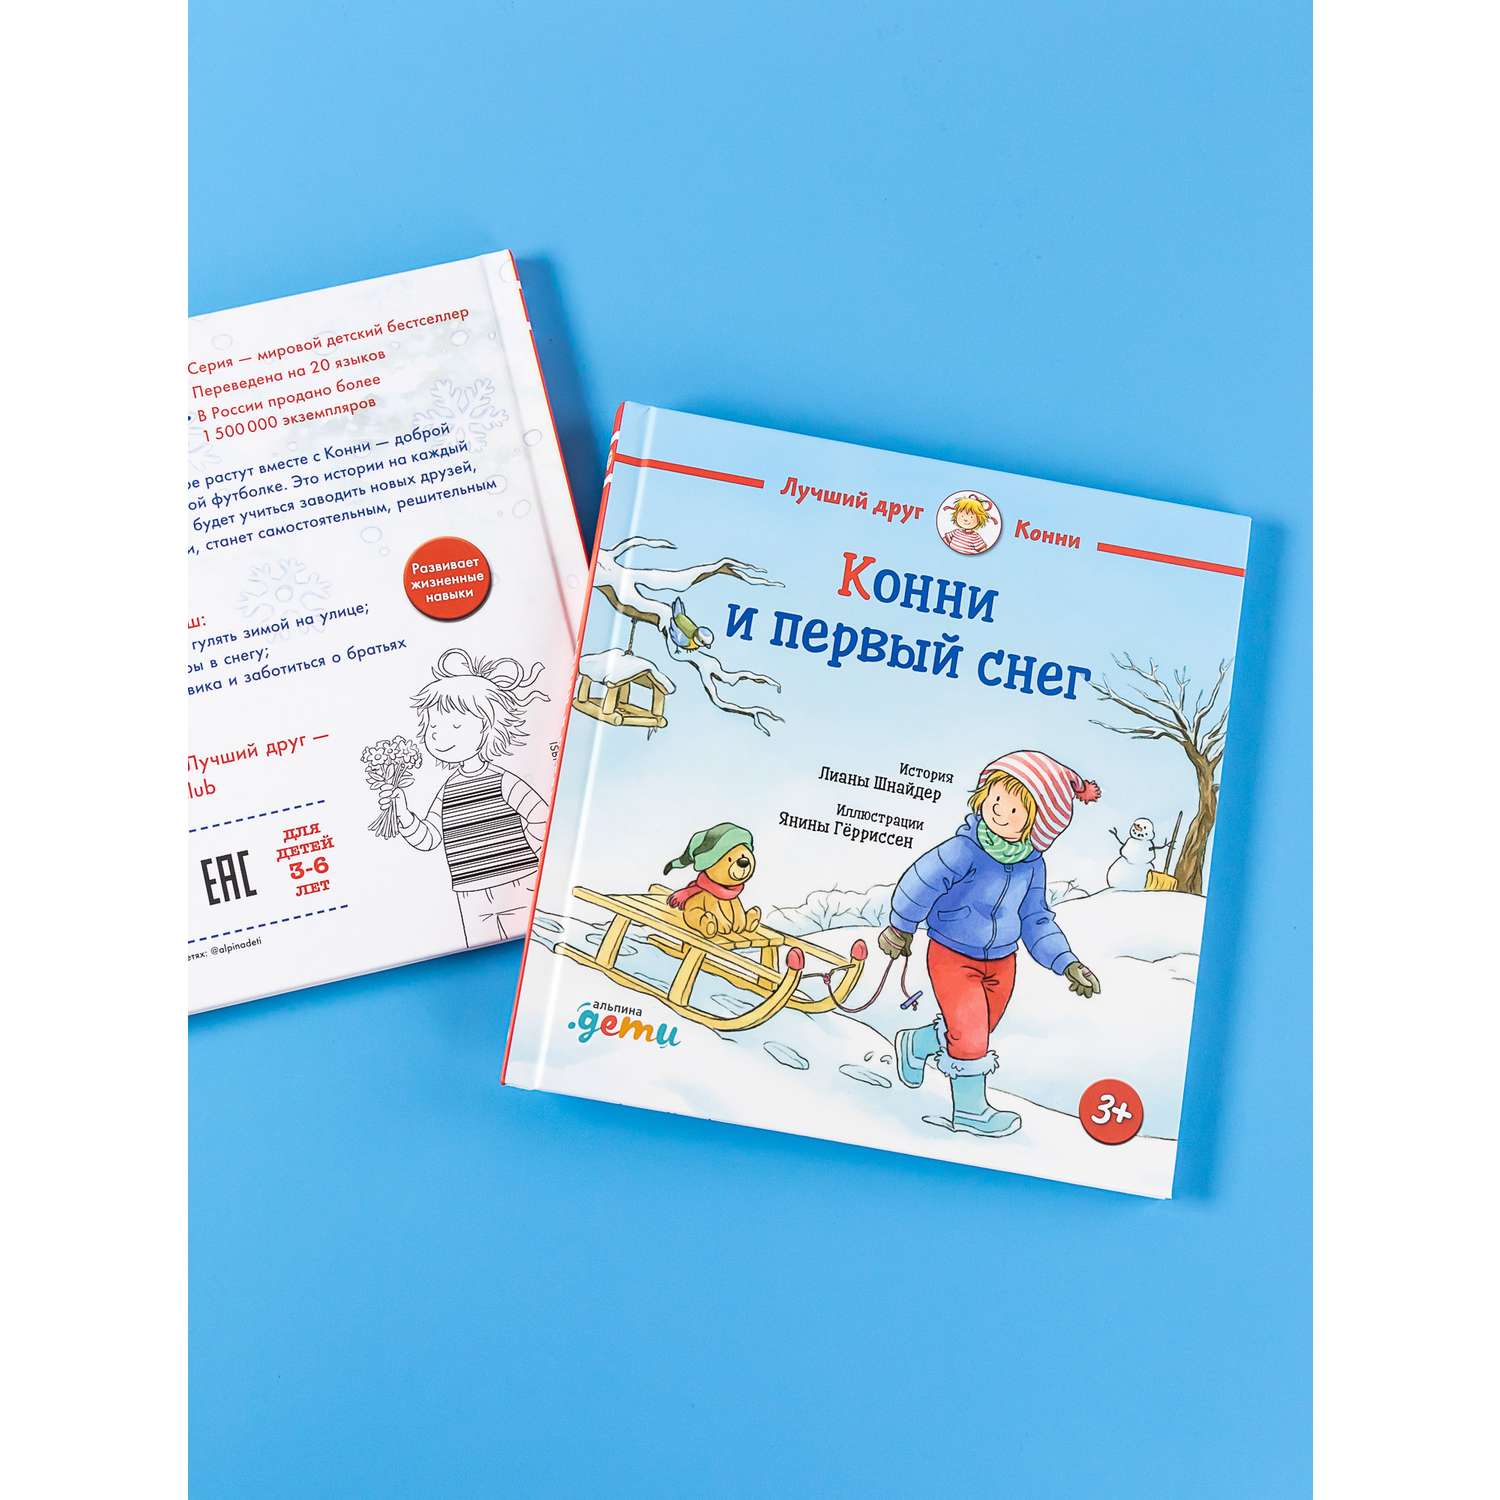 Книга Альпина. Дети Конни и первый снег - фото 2